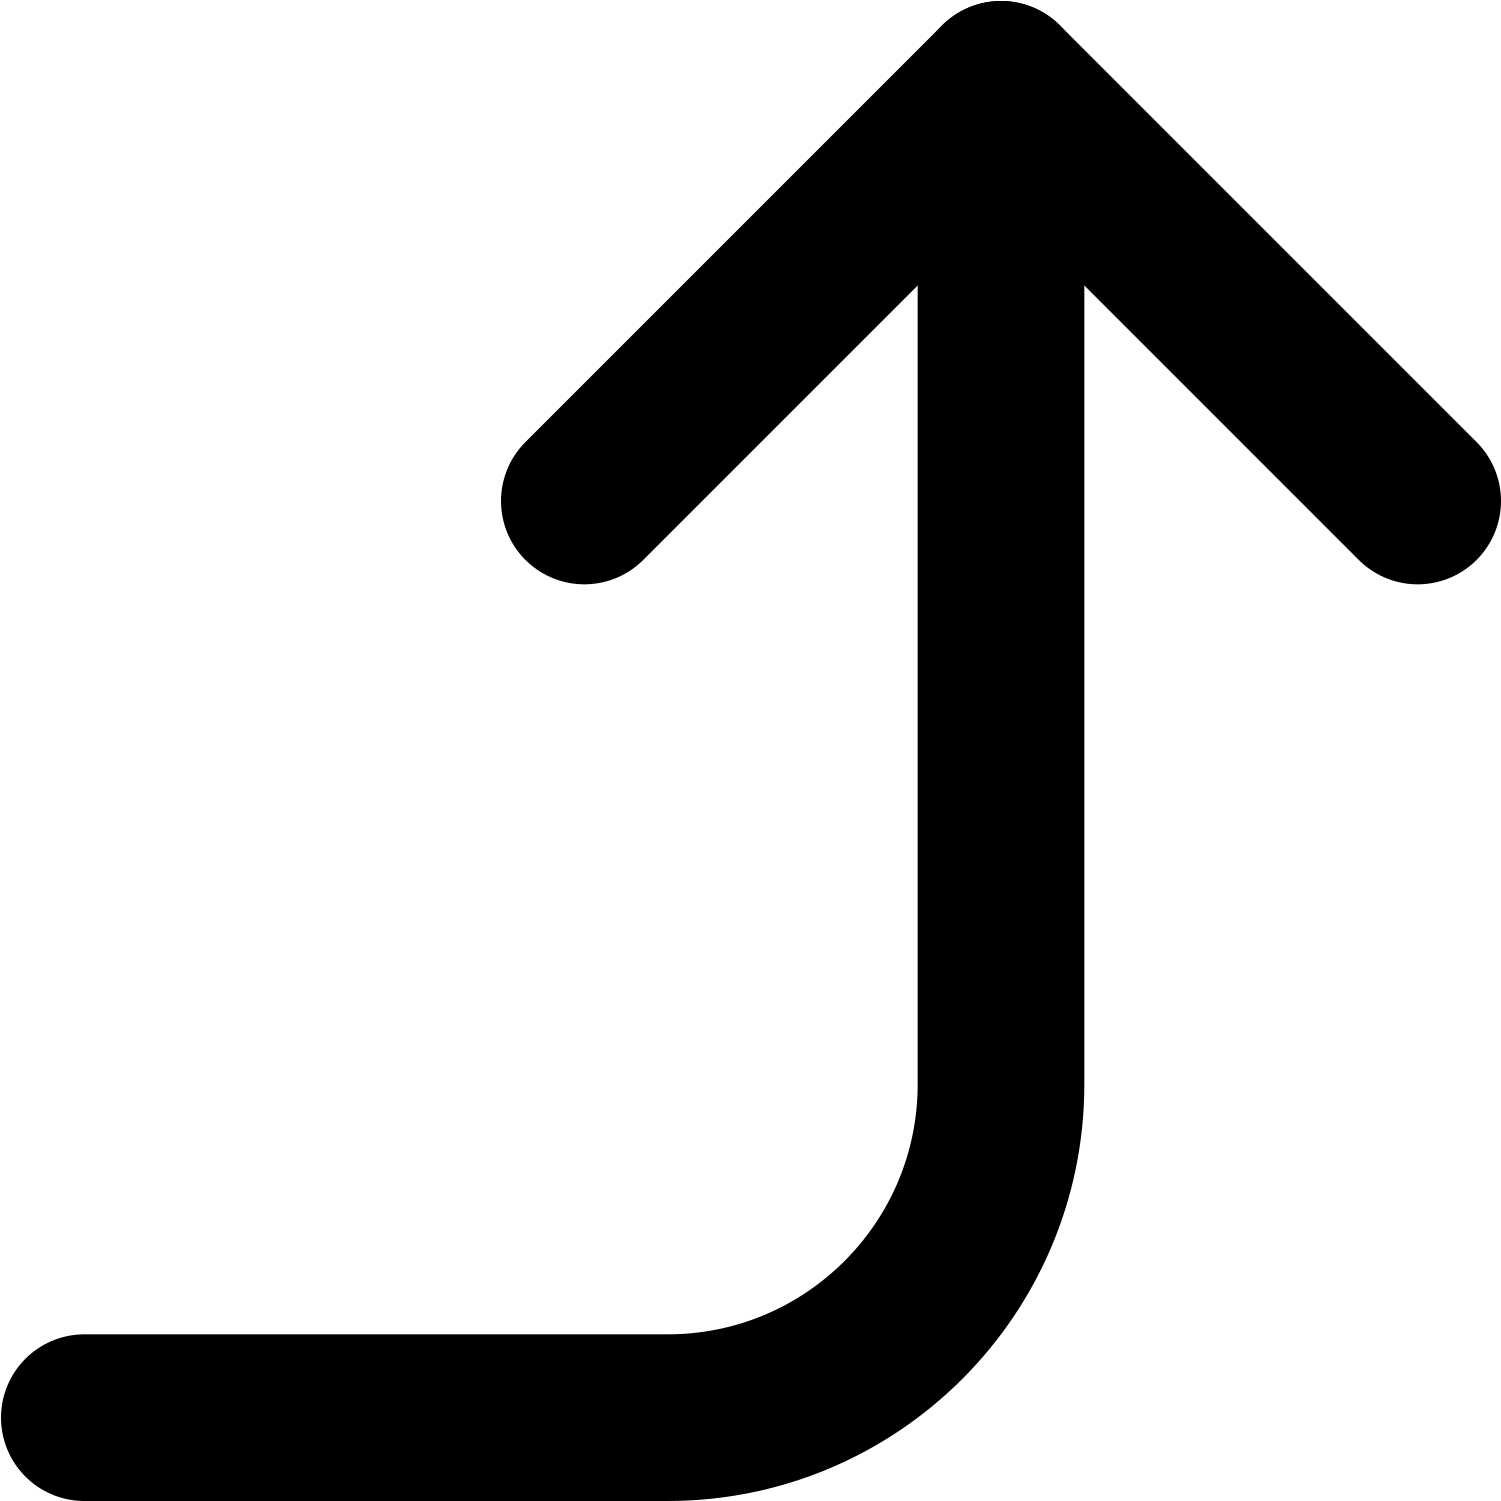 Open - Up Arrow Key Symbol (2000x2000)